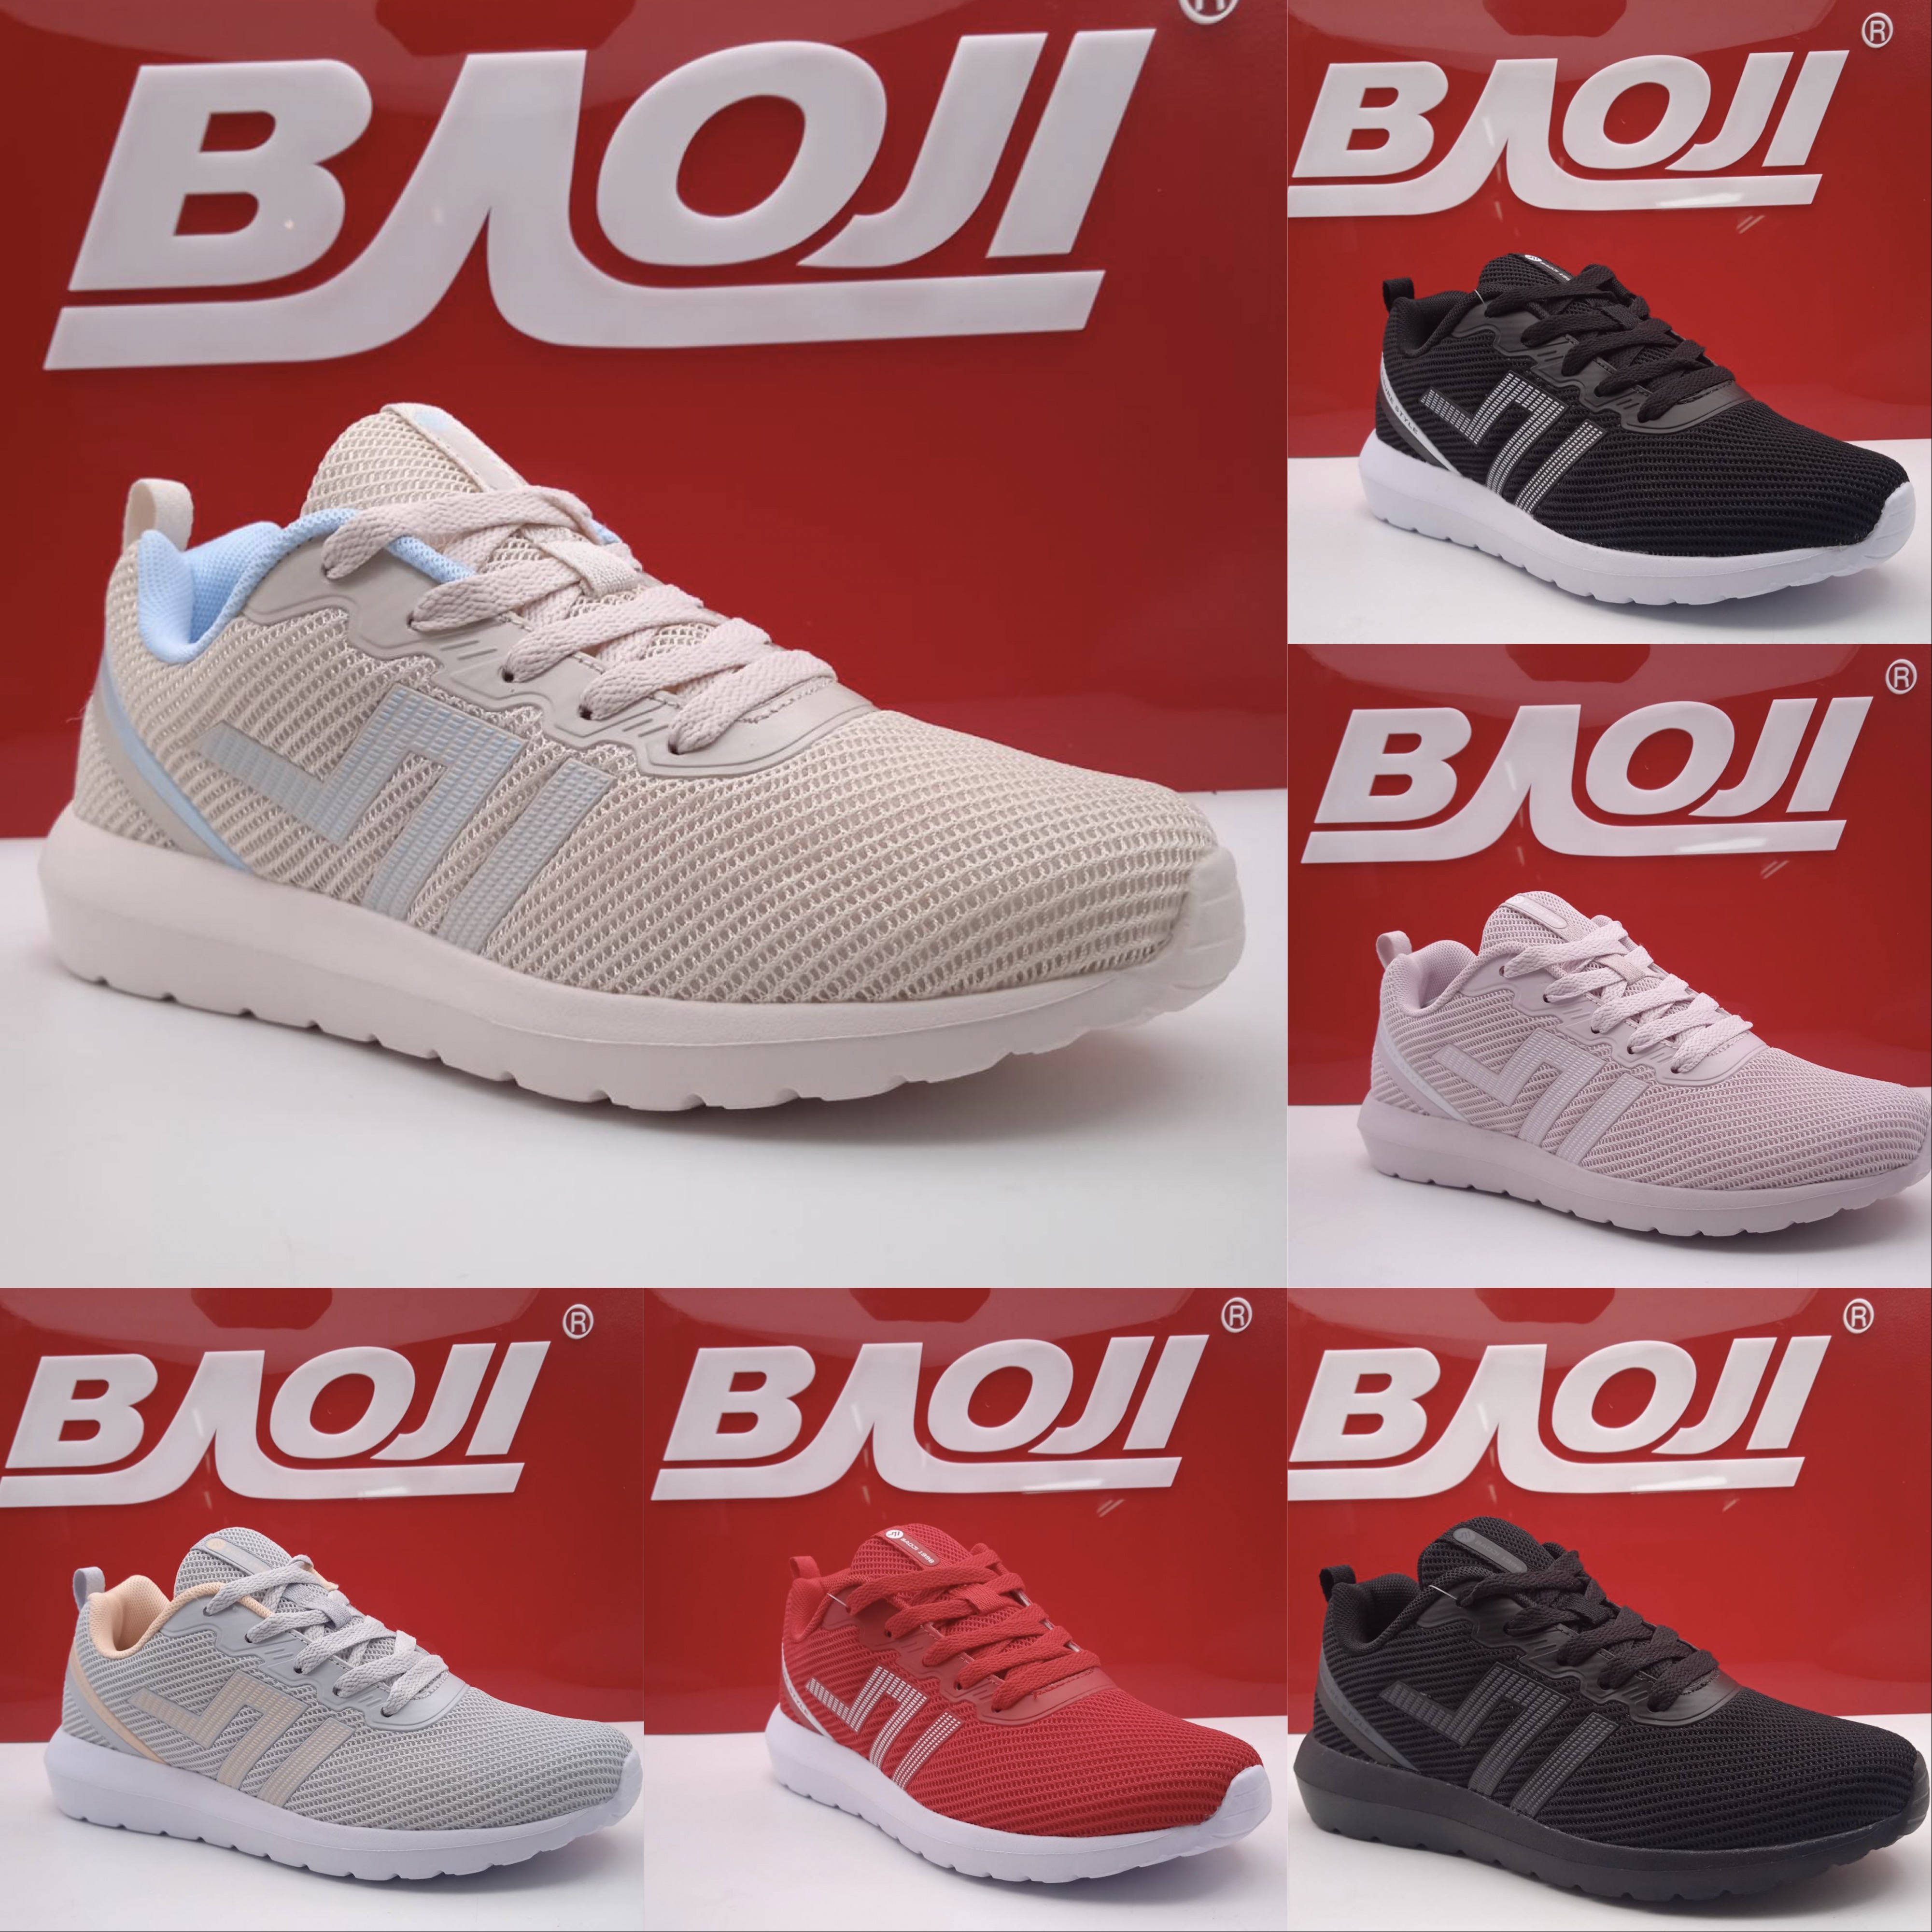 [ส่งฟรีคูปองใต้รูป][349฿ โปรวันแม่ วันนี้-12สิงหา] Baoji บาโอจิ แท้100% รองเท้าผ้าใบผู้หญิง bjw752 [พร้อมส่ง ส่งเคอรี่ทุกชิ้น]